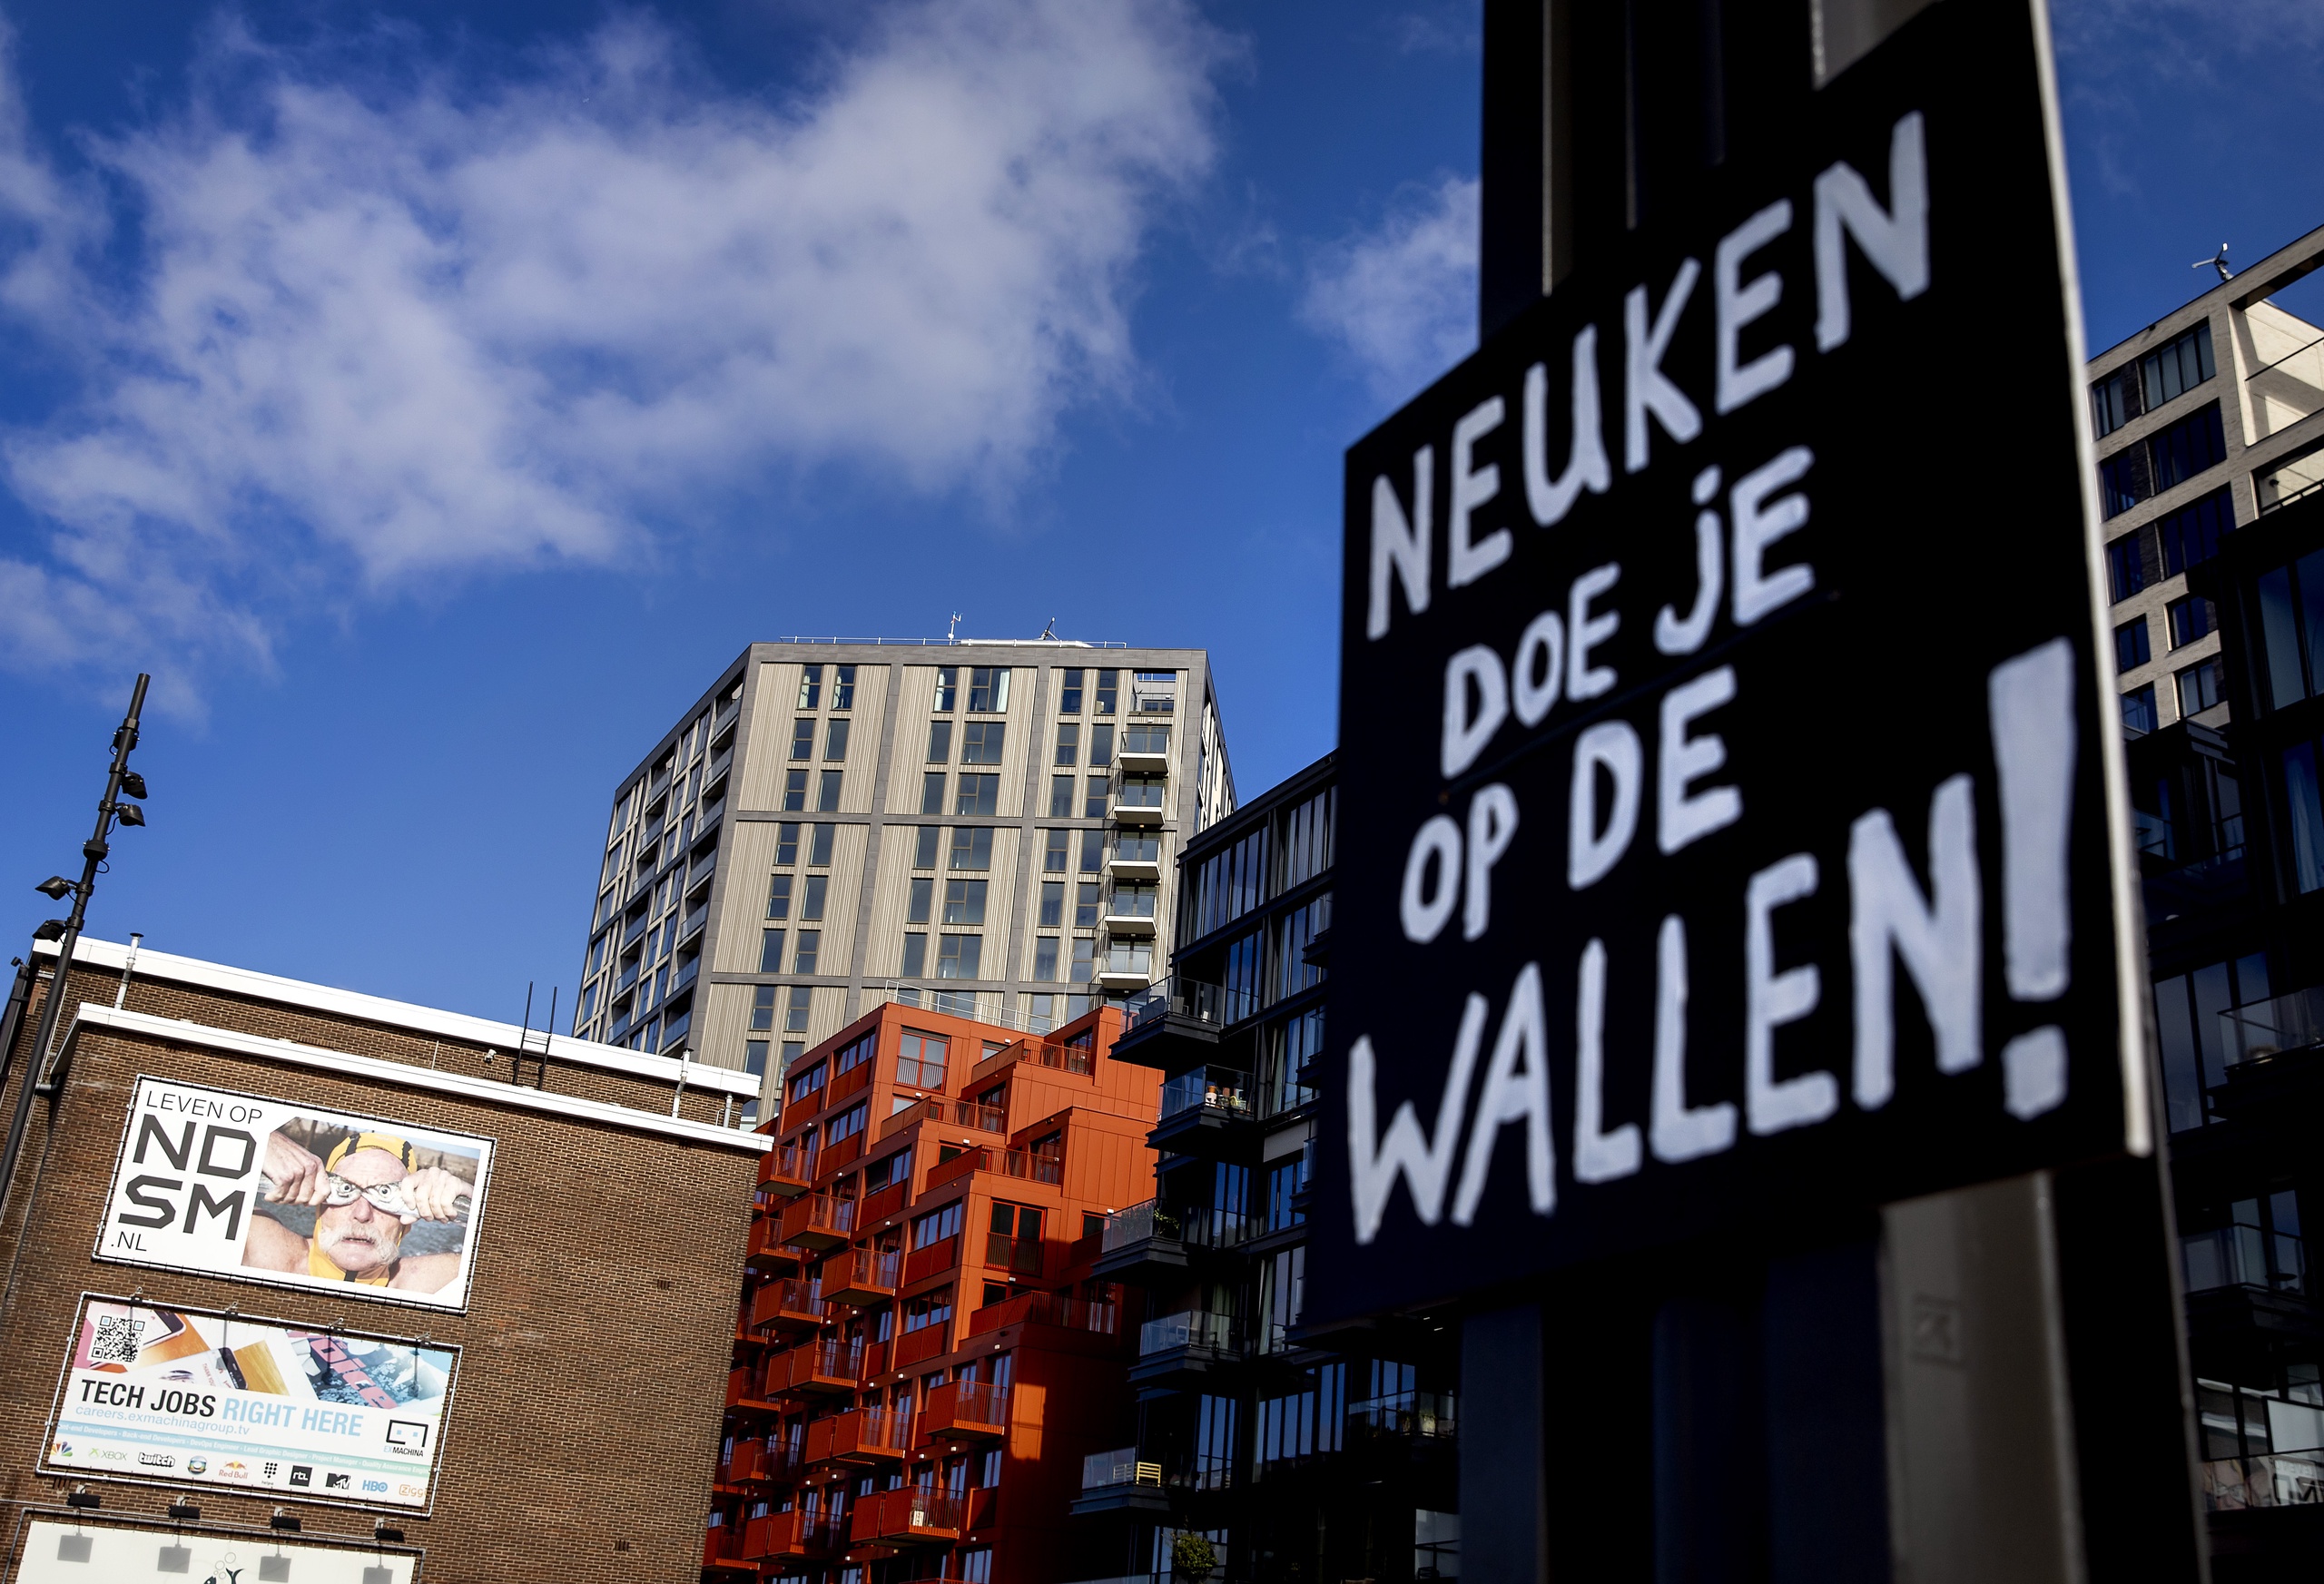 Ook de RAI is tegen de komst van het erotisch centrum op de Zuidas in Amsterdam. Dat zegt een woordvoerder van het evenementencentrum tegen BNR. De gemeente Amsterdam wil de prostitutie op de Wallen verplaatsen, maar stuit daarbij op fel verzet. 